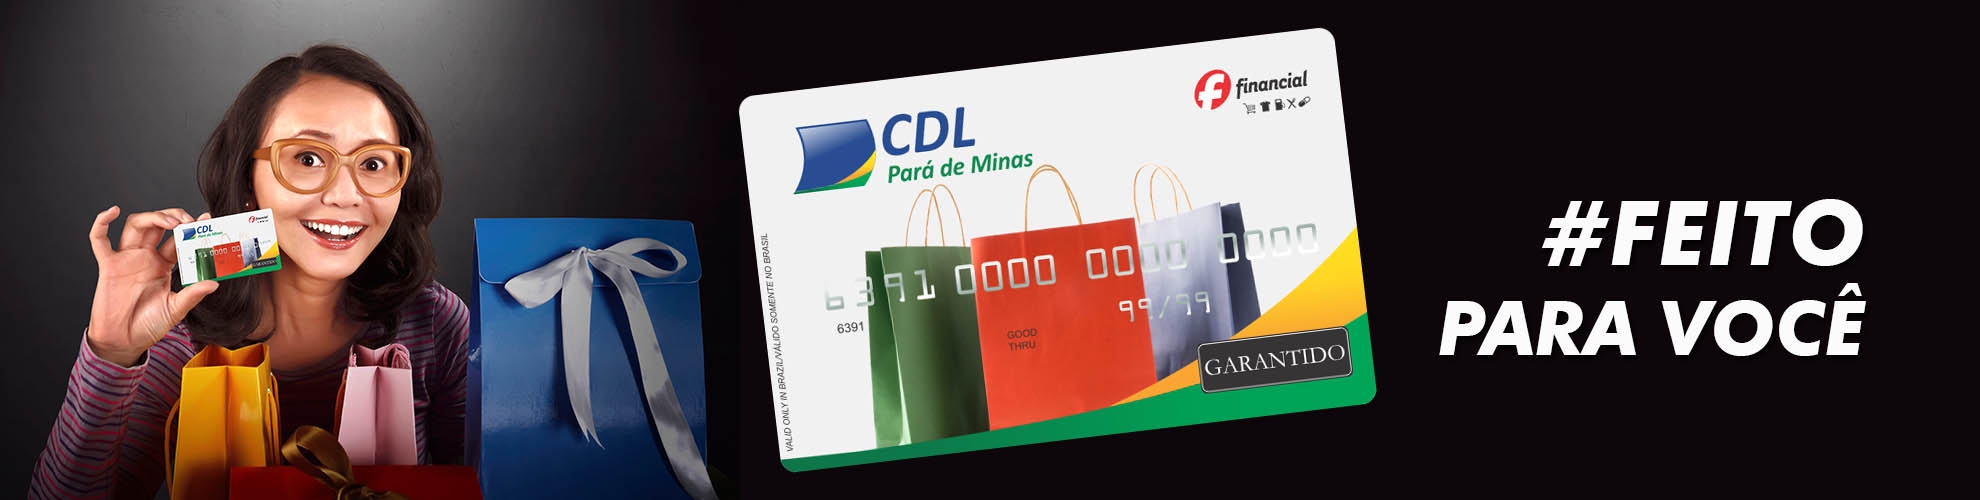 Cartão Pré-Pago CDL Pará de Minas